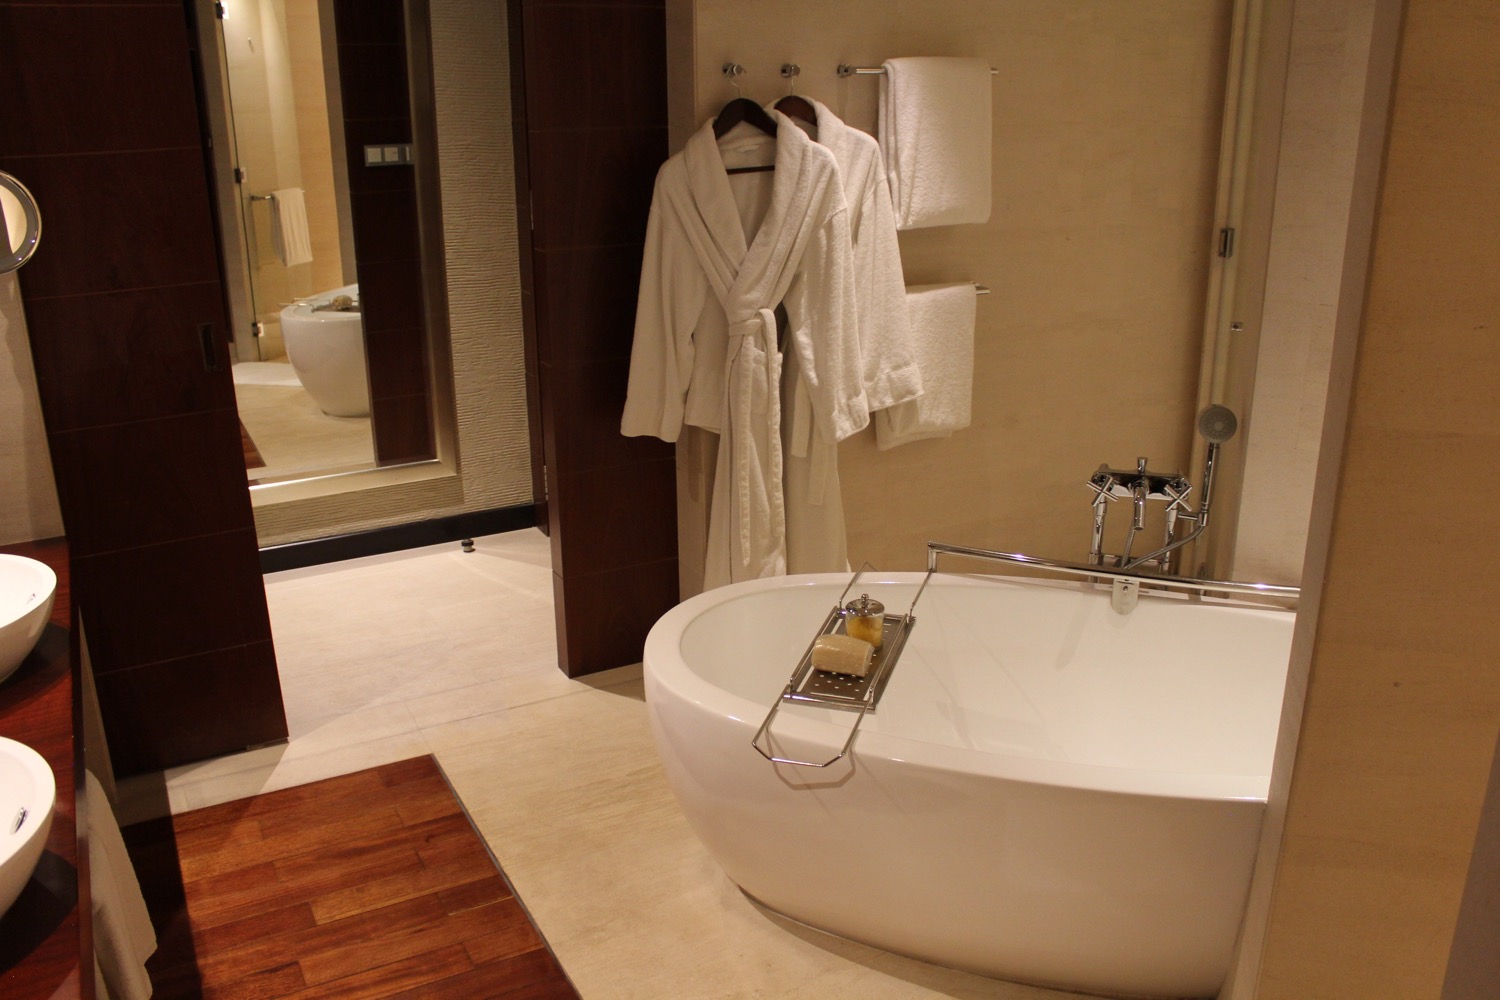 a bathrobe and bathtub in a bathroom